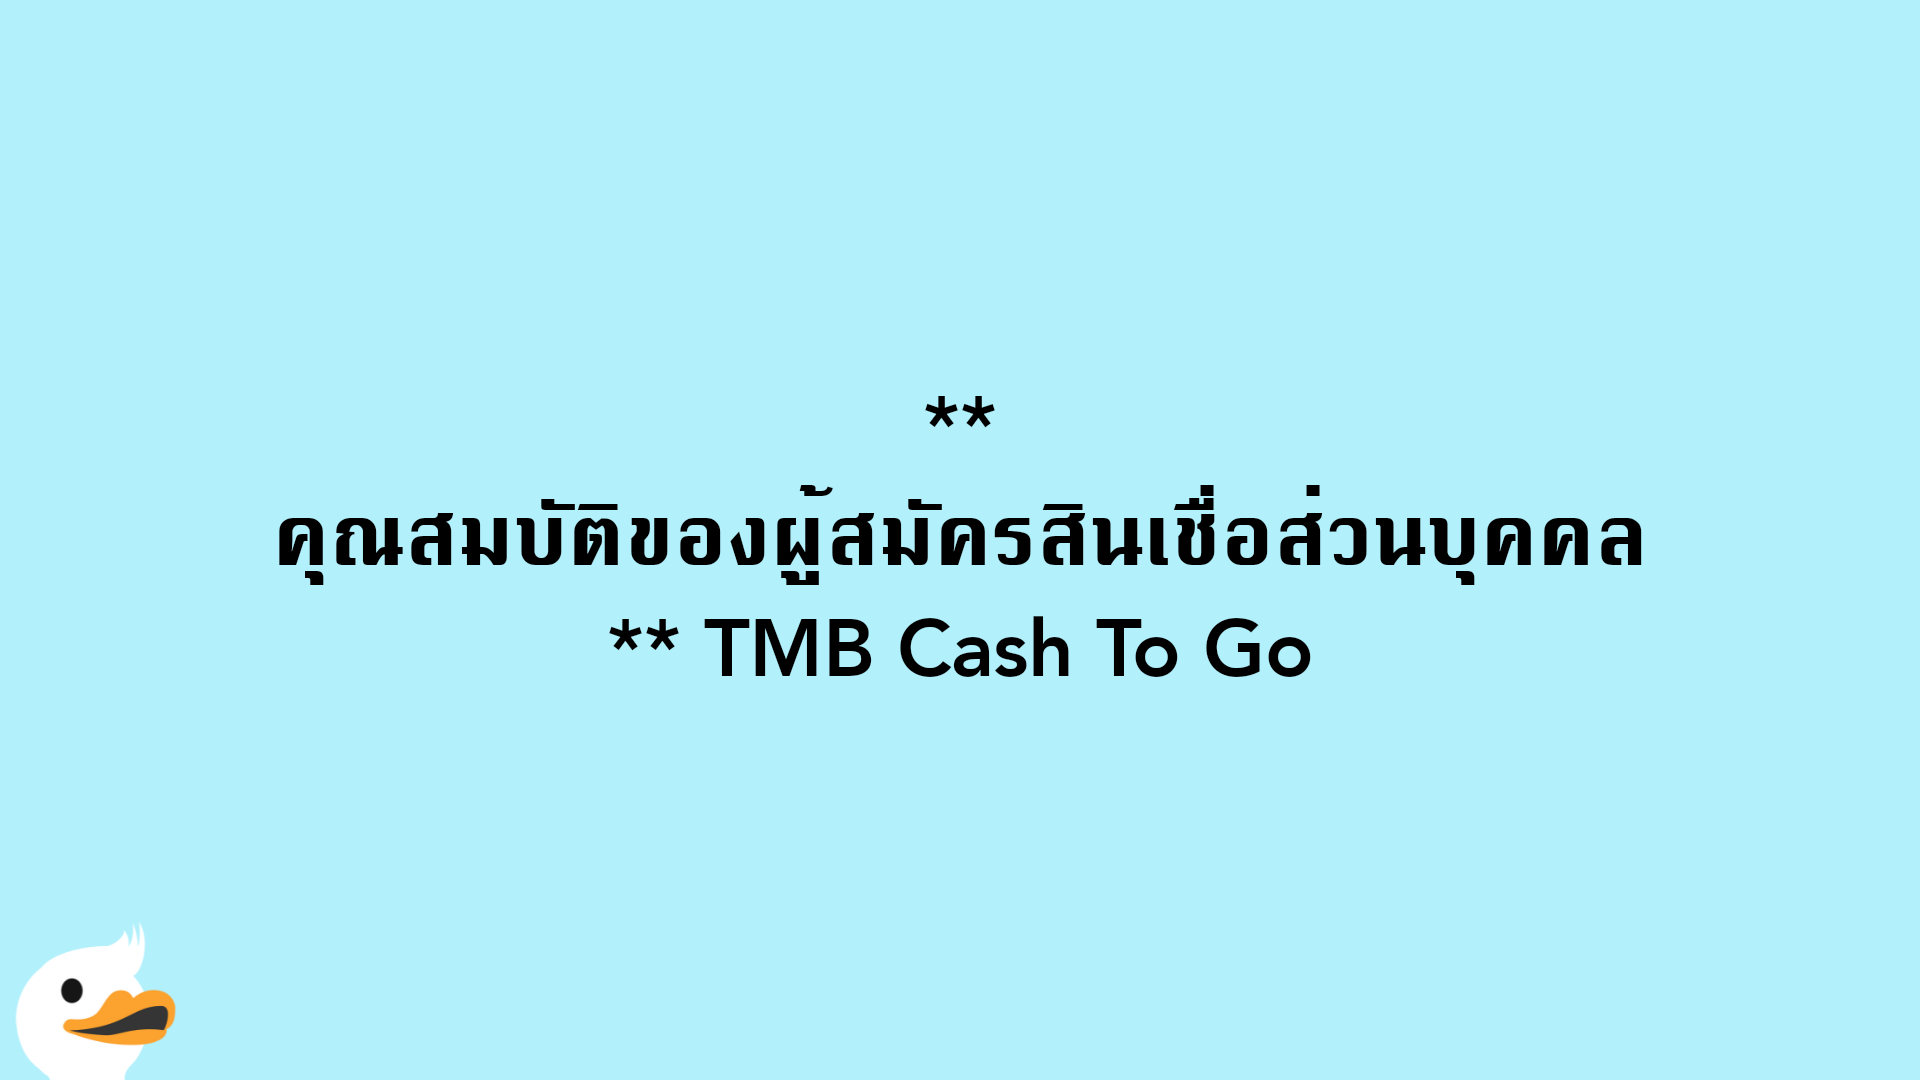 คุณสมบัติของผู้สมัครสินเชื่อส่วนบุคคล TMB Cash To Go